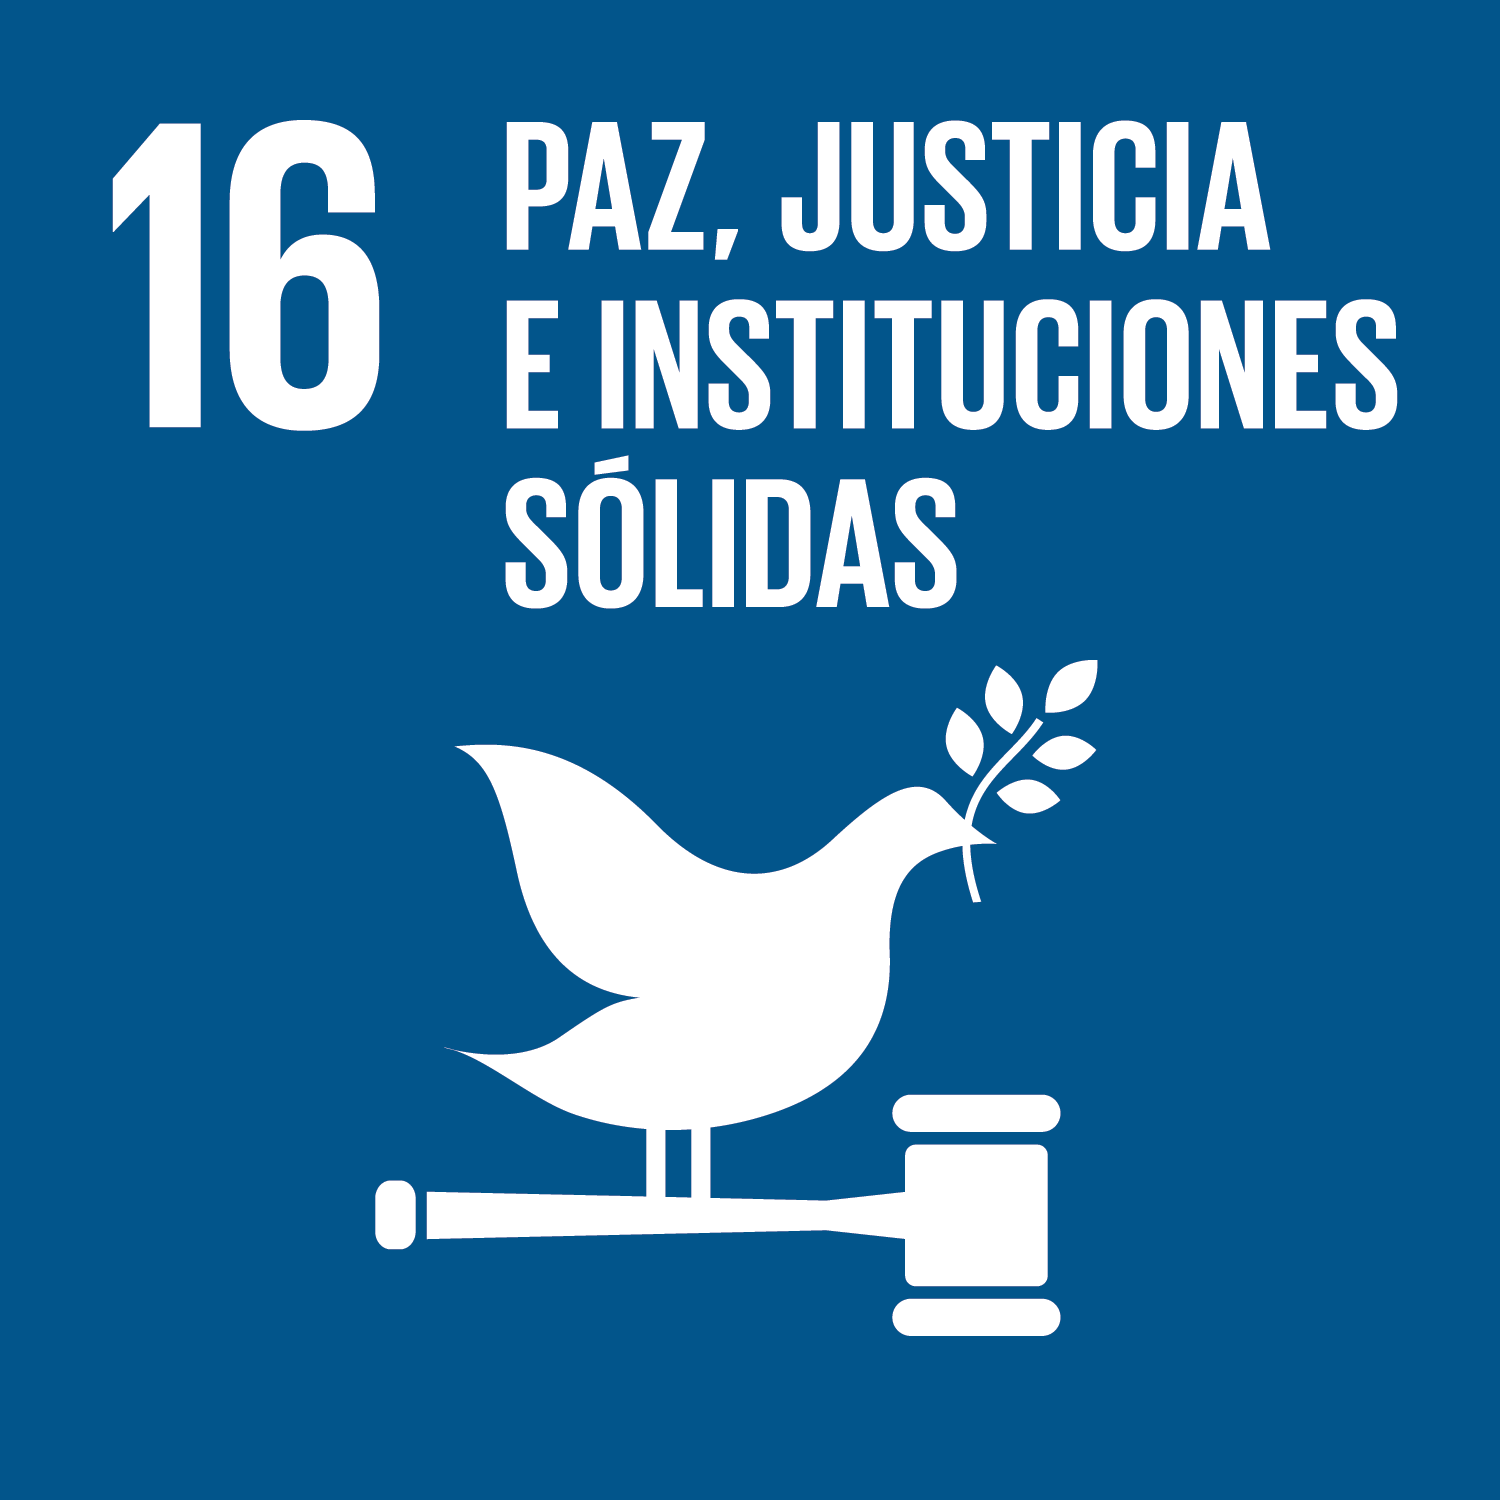 16 Paz, justicia e instituciones solidas